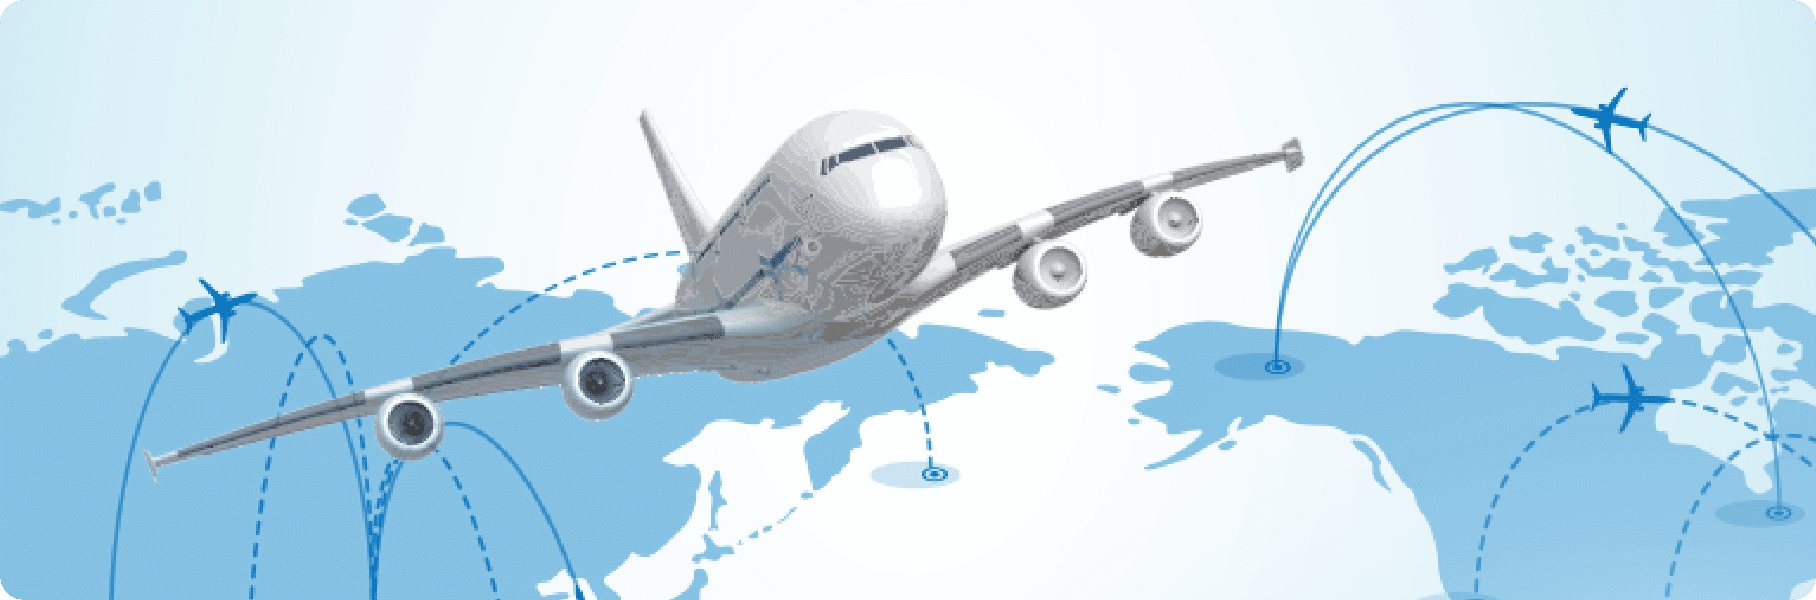 Dịch vụ vận tải hàng không quốc tế, gửi hàng theo đường hàng không giá rẻ